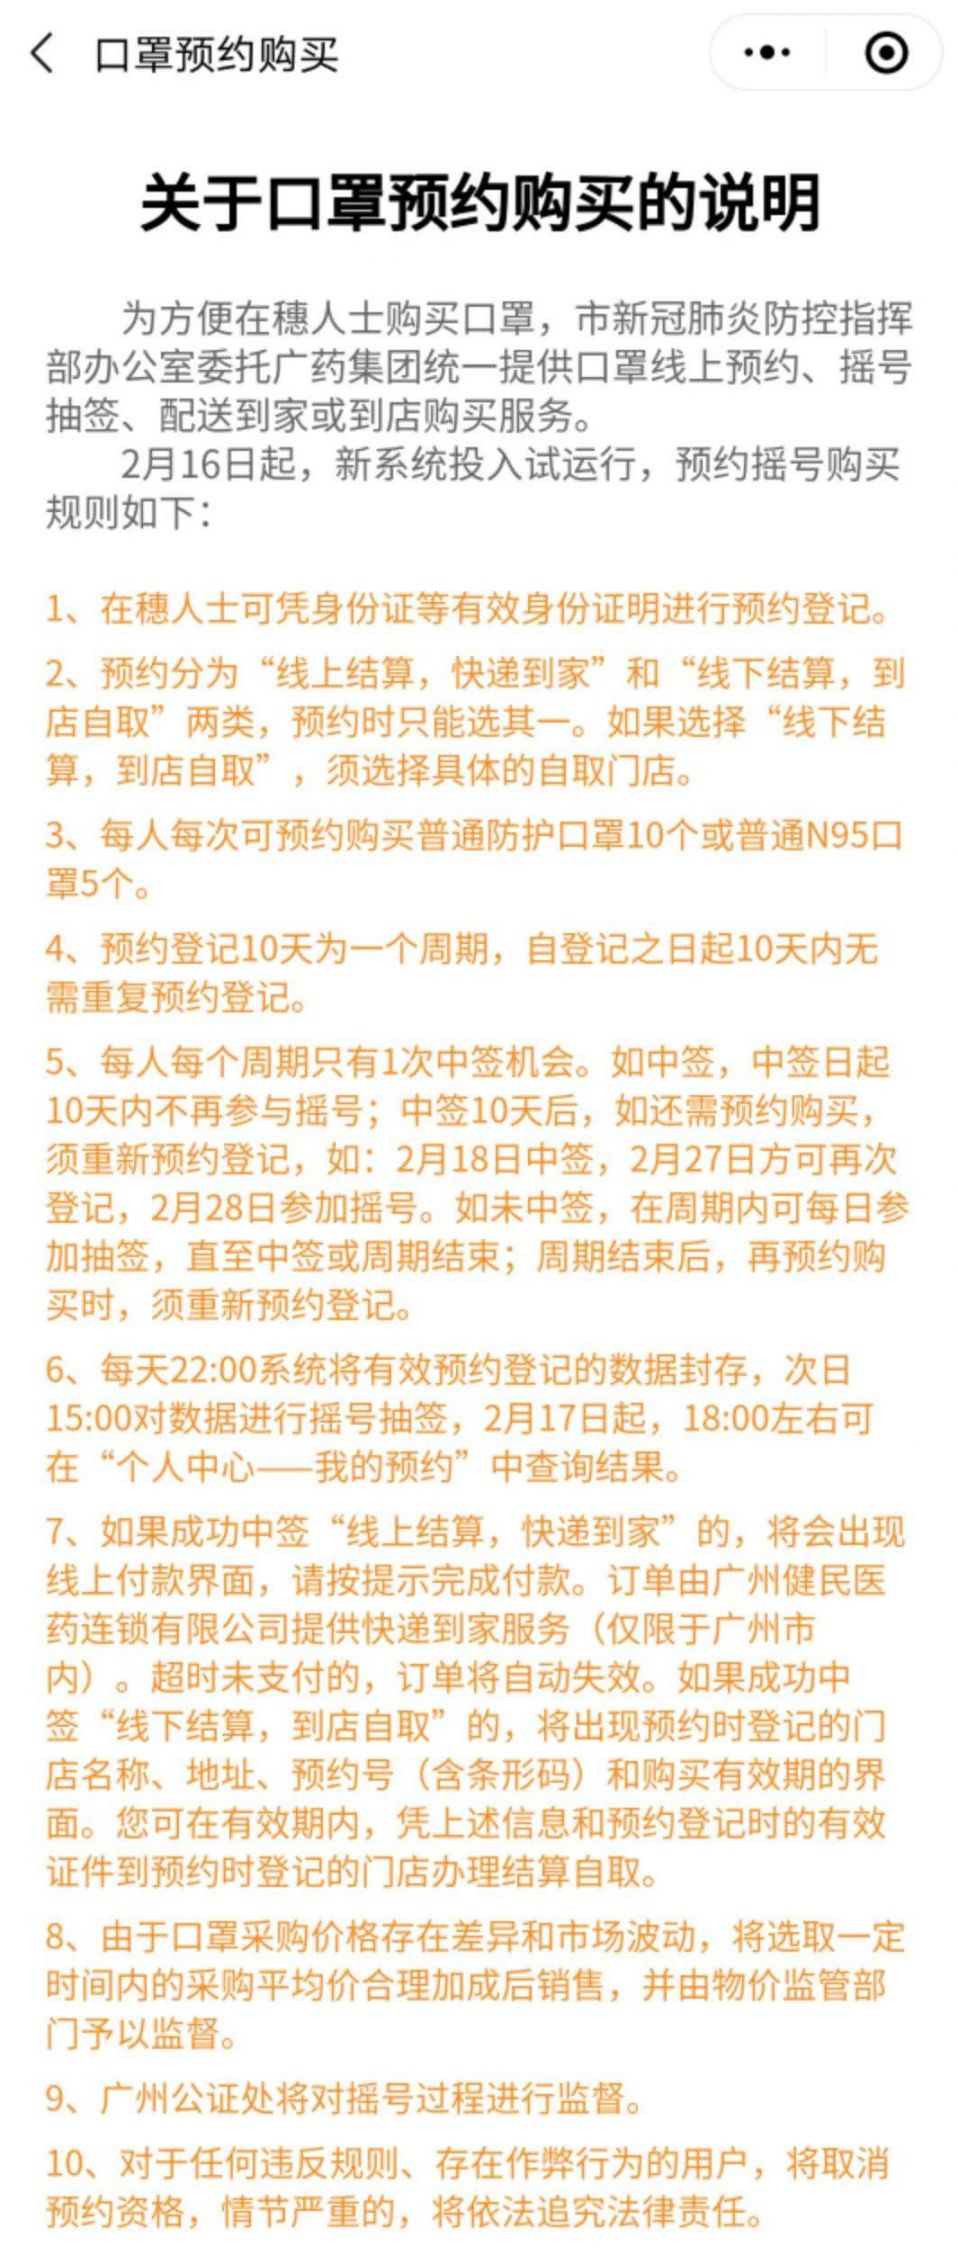 2月16日起广州穗康小程序口罩预约摇号新规则一览